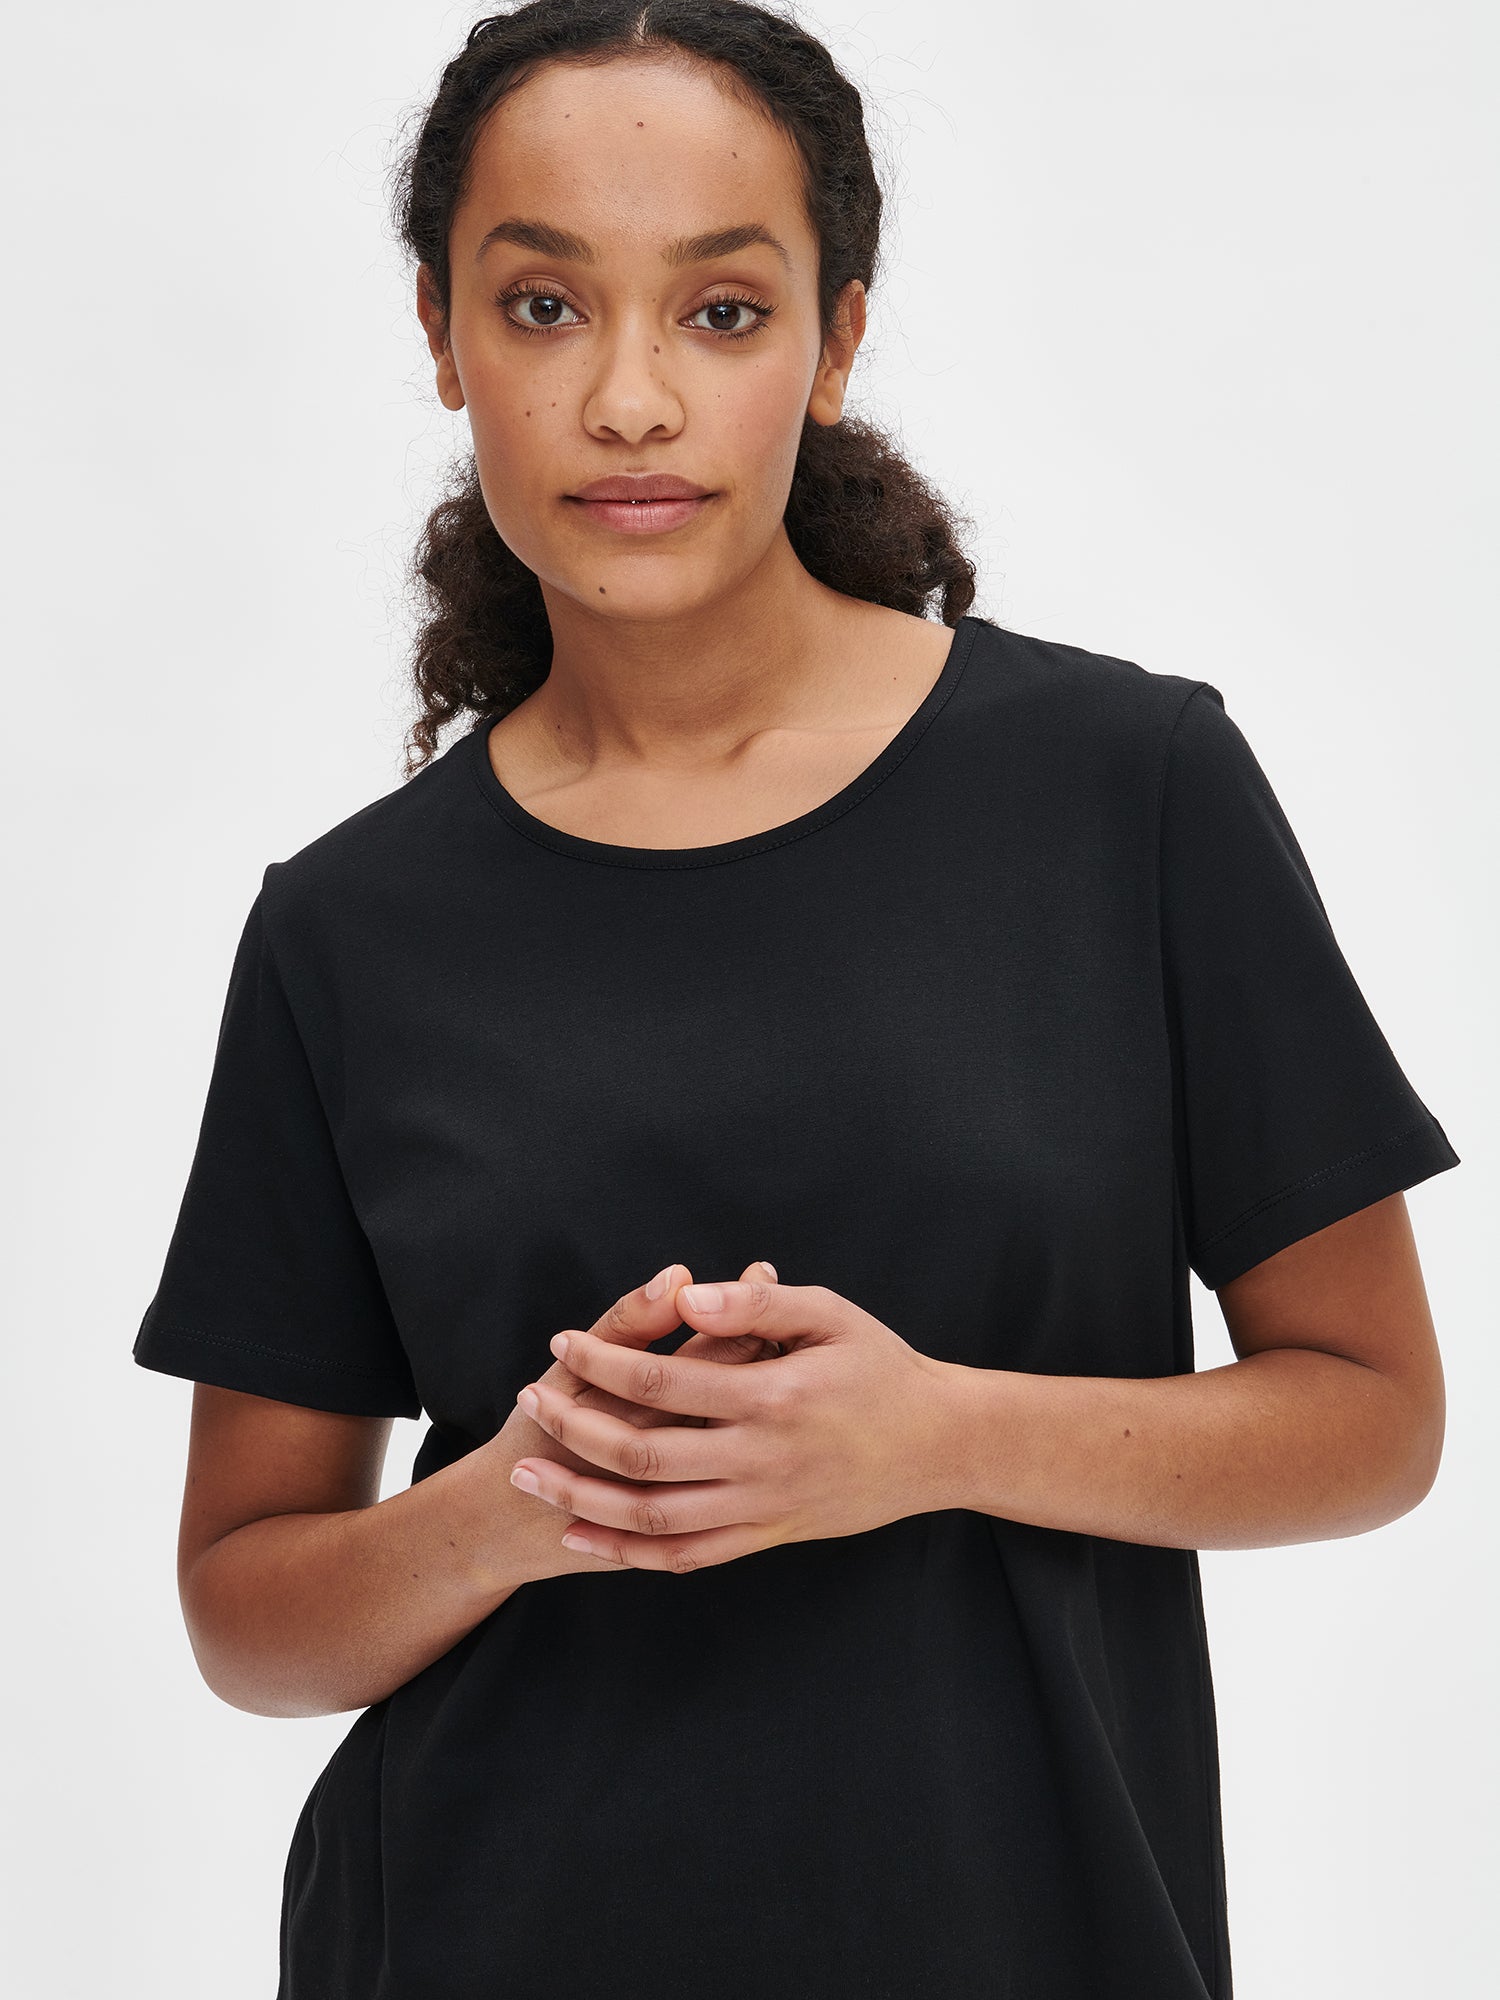 Nanson naisten kuosillinen musta Hetki- t-paita pyöreällä pääntiellä ja pyöristetyllä helmalla mallin päällä lähikuvassa.